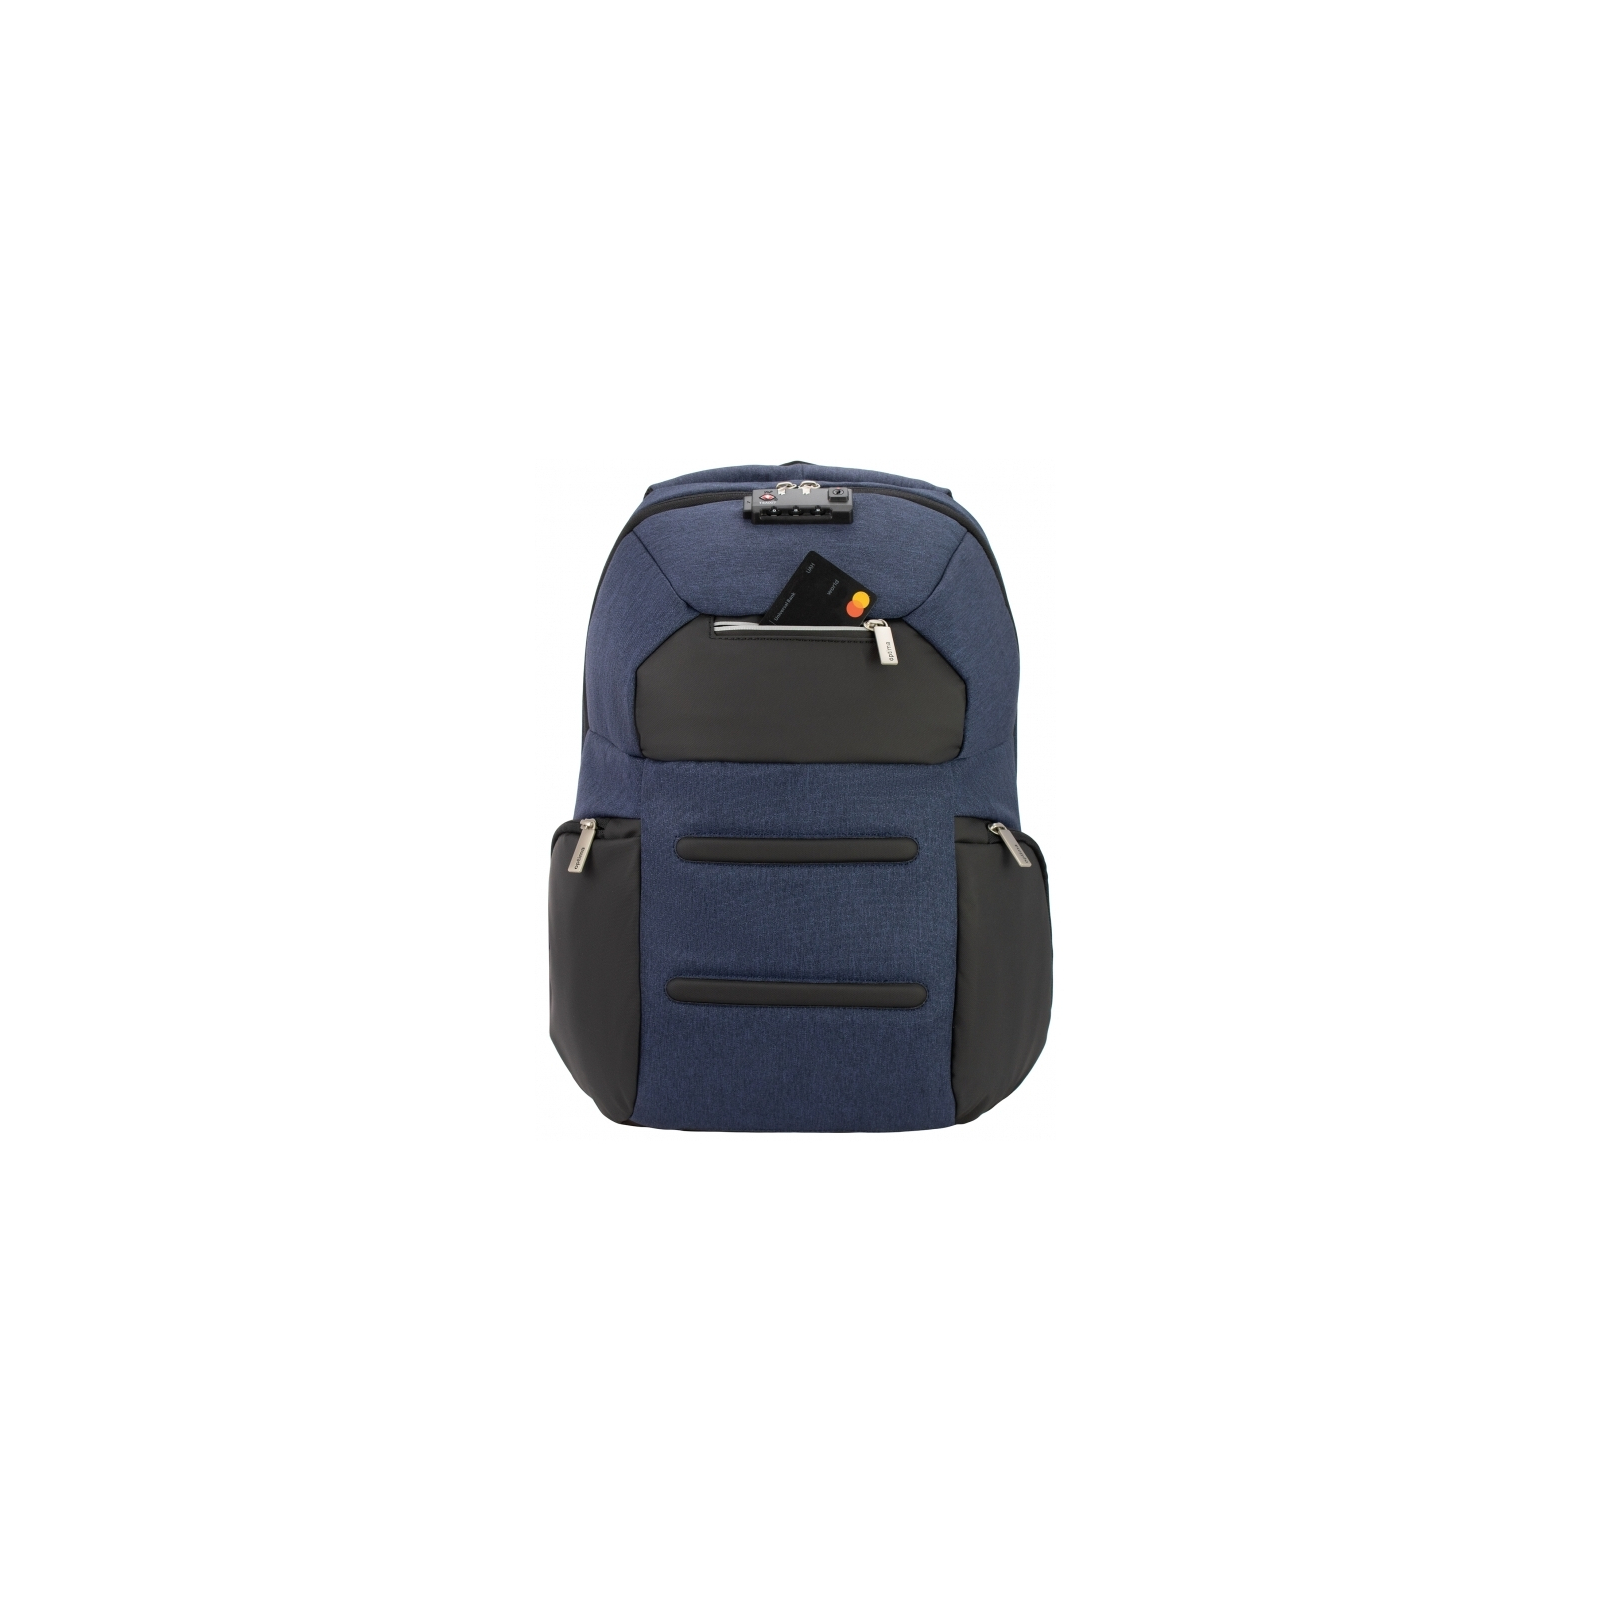 Рюкзак школьный Optima 18.5" USB Anti-Theft унисекс 0.7 кг 16-25 л Серый (O96917-03) изображение 4